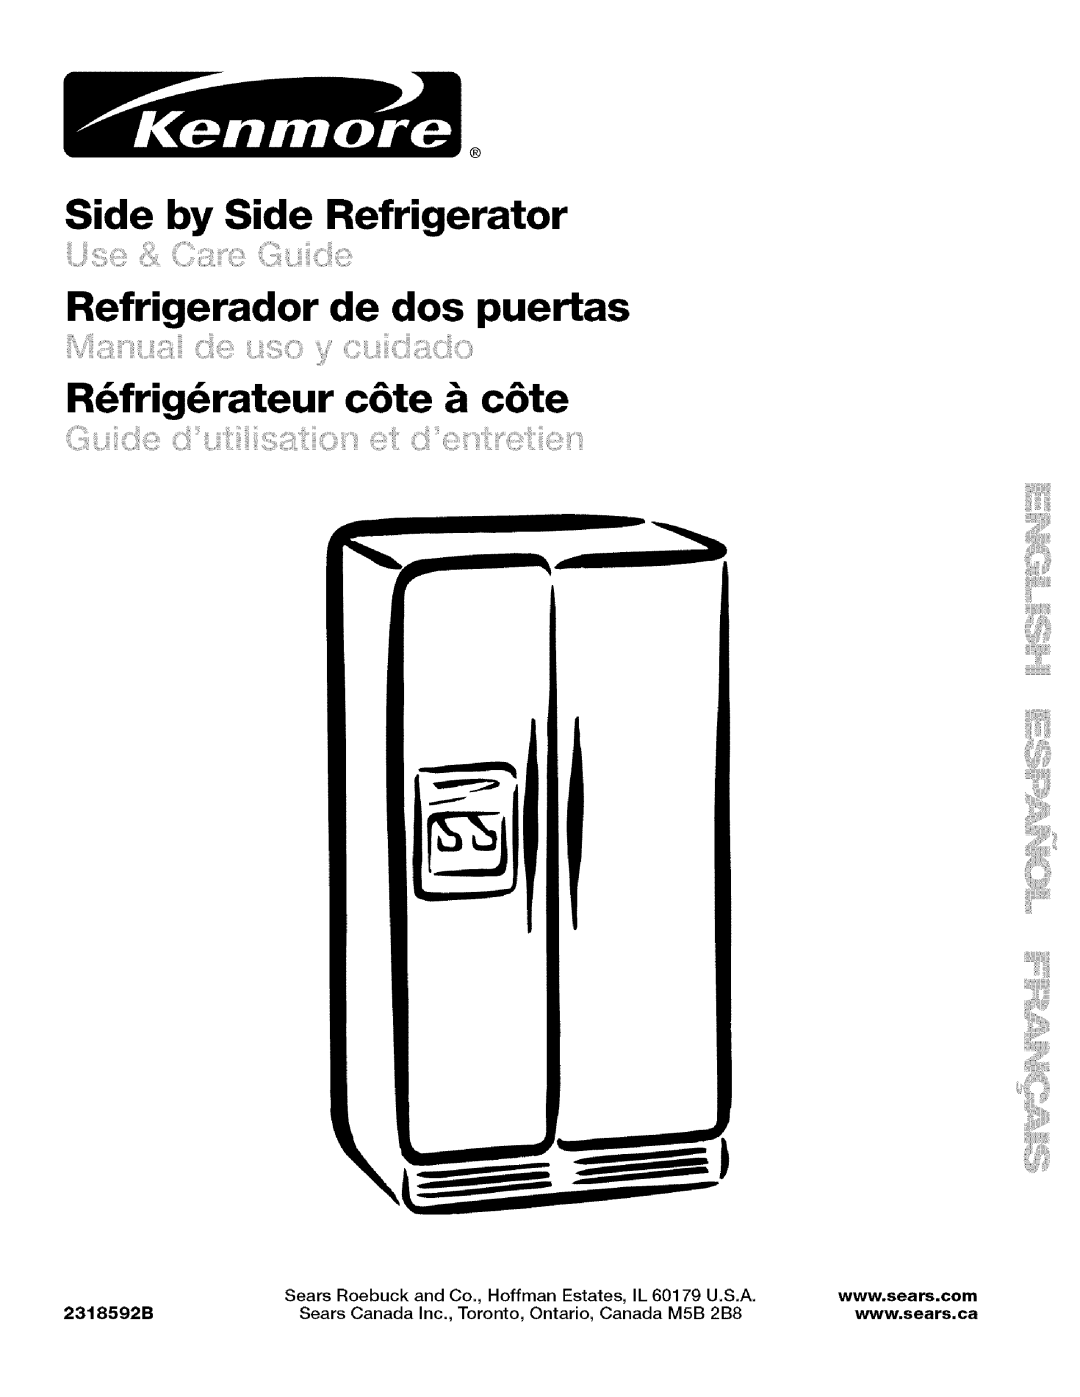 Kenmore 10656834603 manual Side by Side Refrigerator, Refrigerador de dos puertas, R6frig6rateur c6te & c6te, 2318592B 